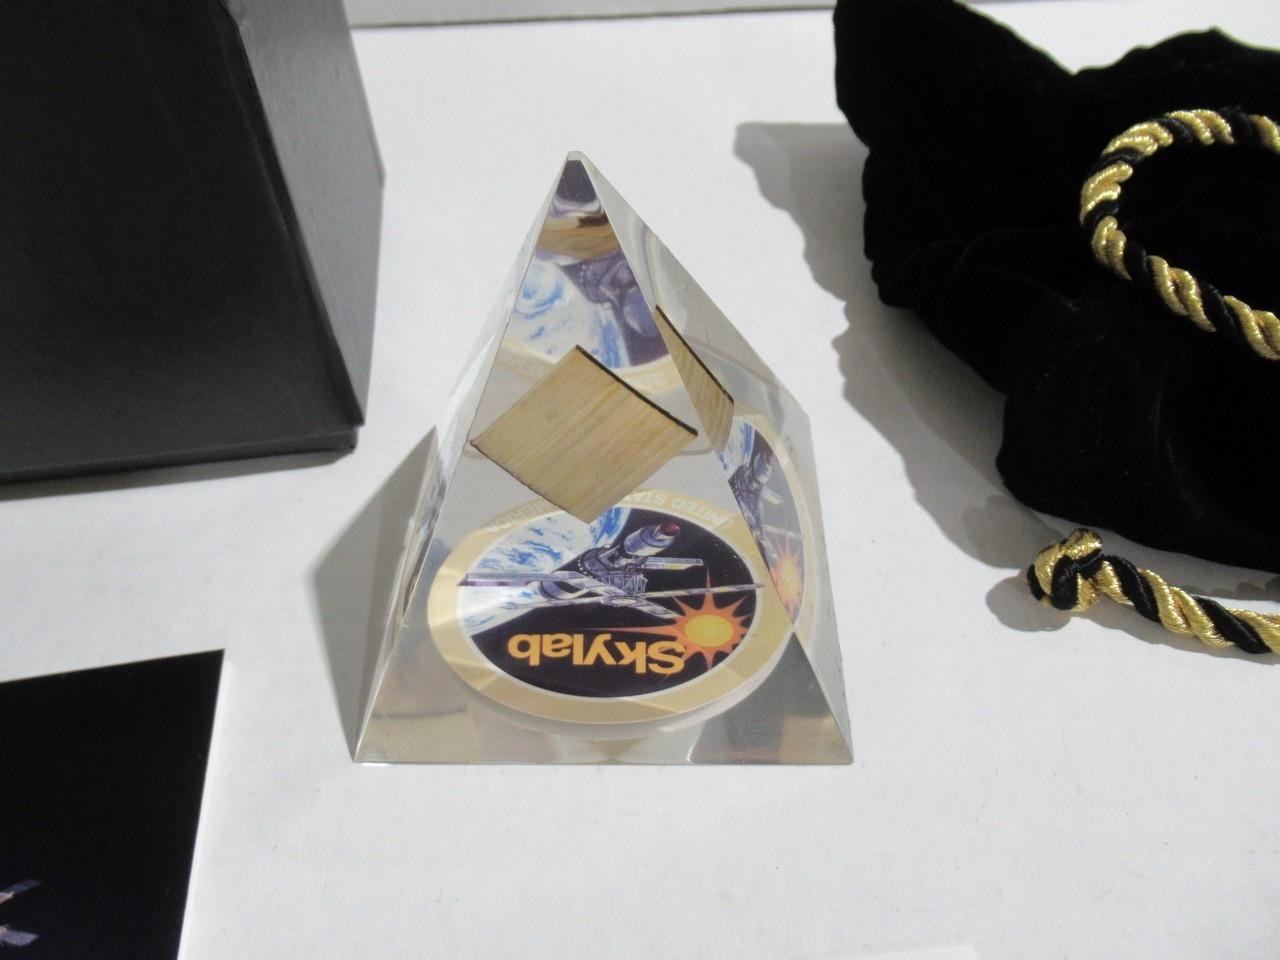 NASA Skylab Fragment in Pyramid Paperweight